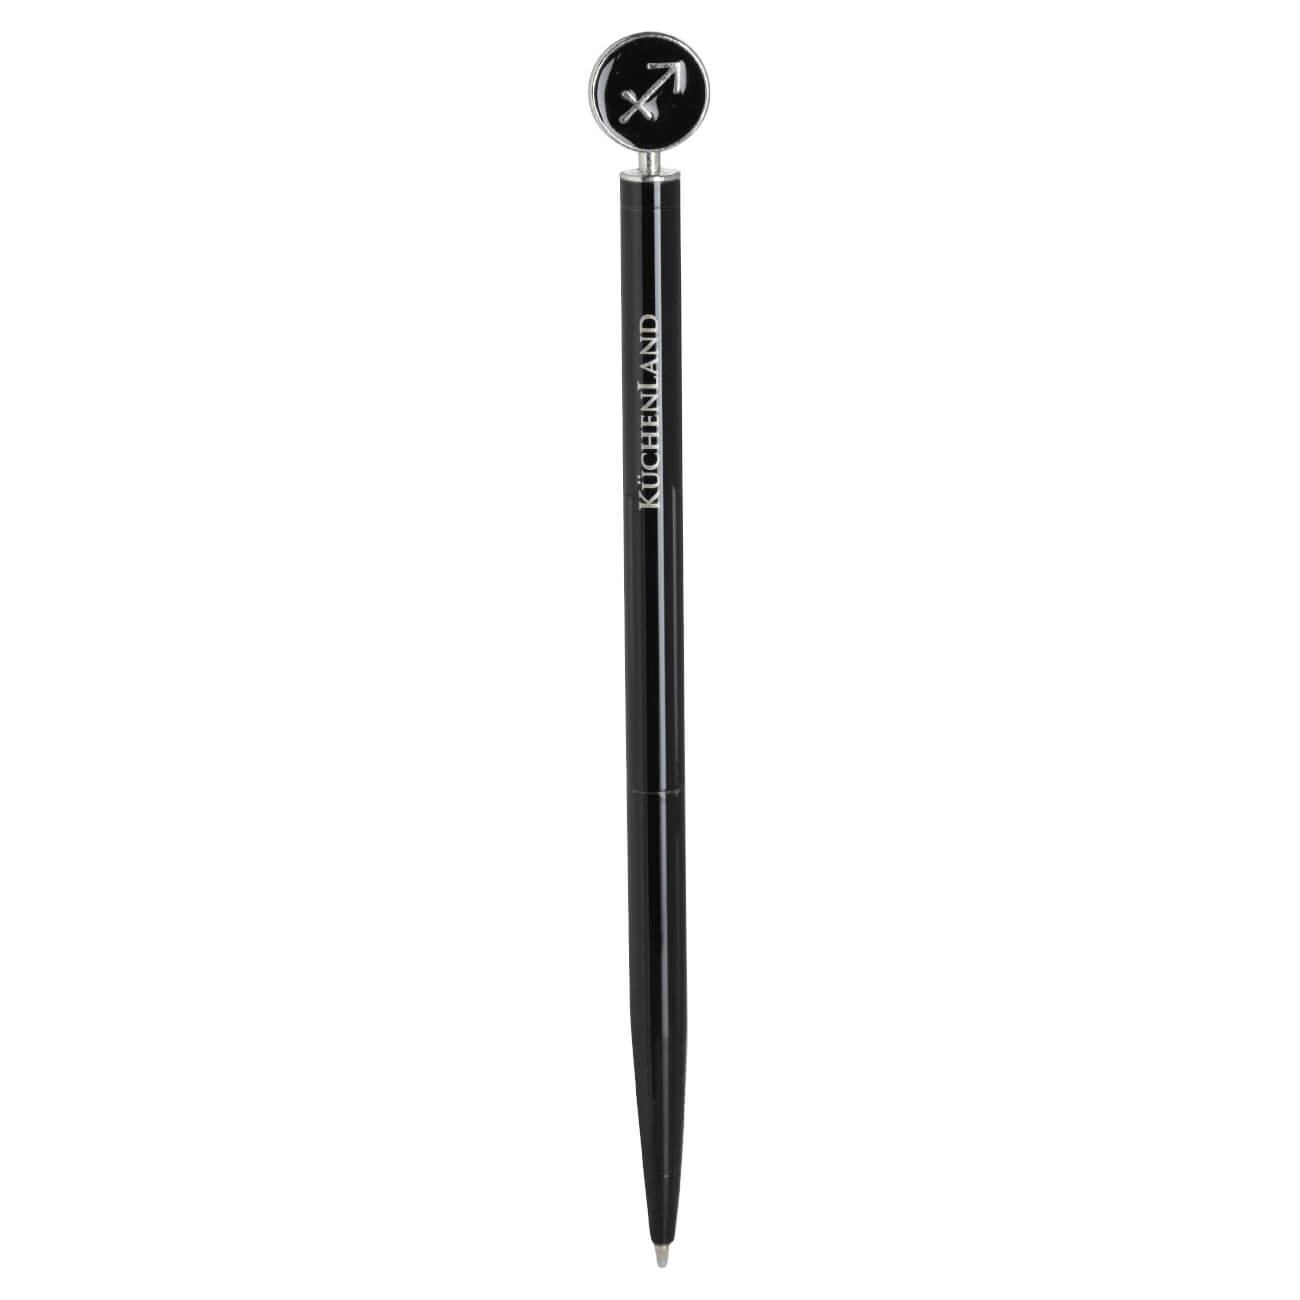 Ручка шариковая, 15 см, с фигуркой, сталь, черно-серебристая, Стрелец, Zodiac грабли длина 25 см деревянная ручка